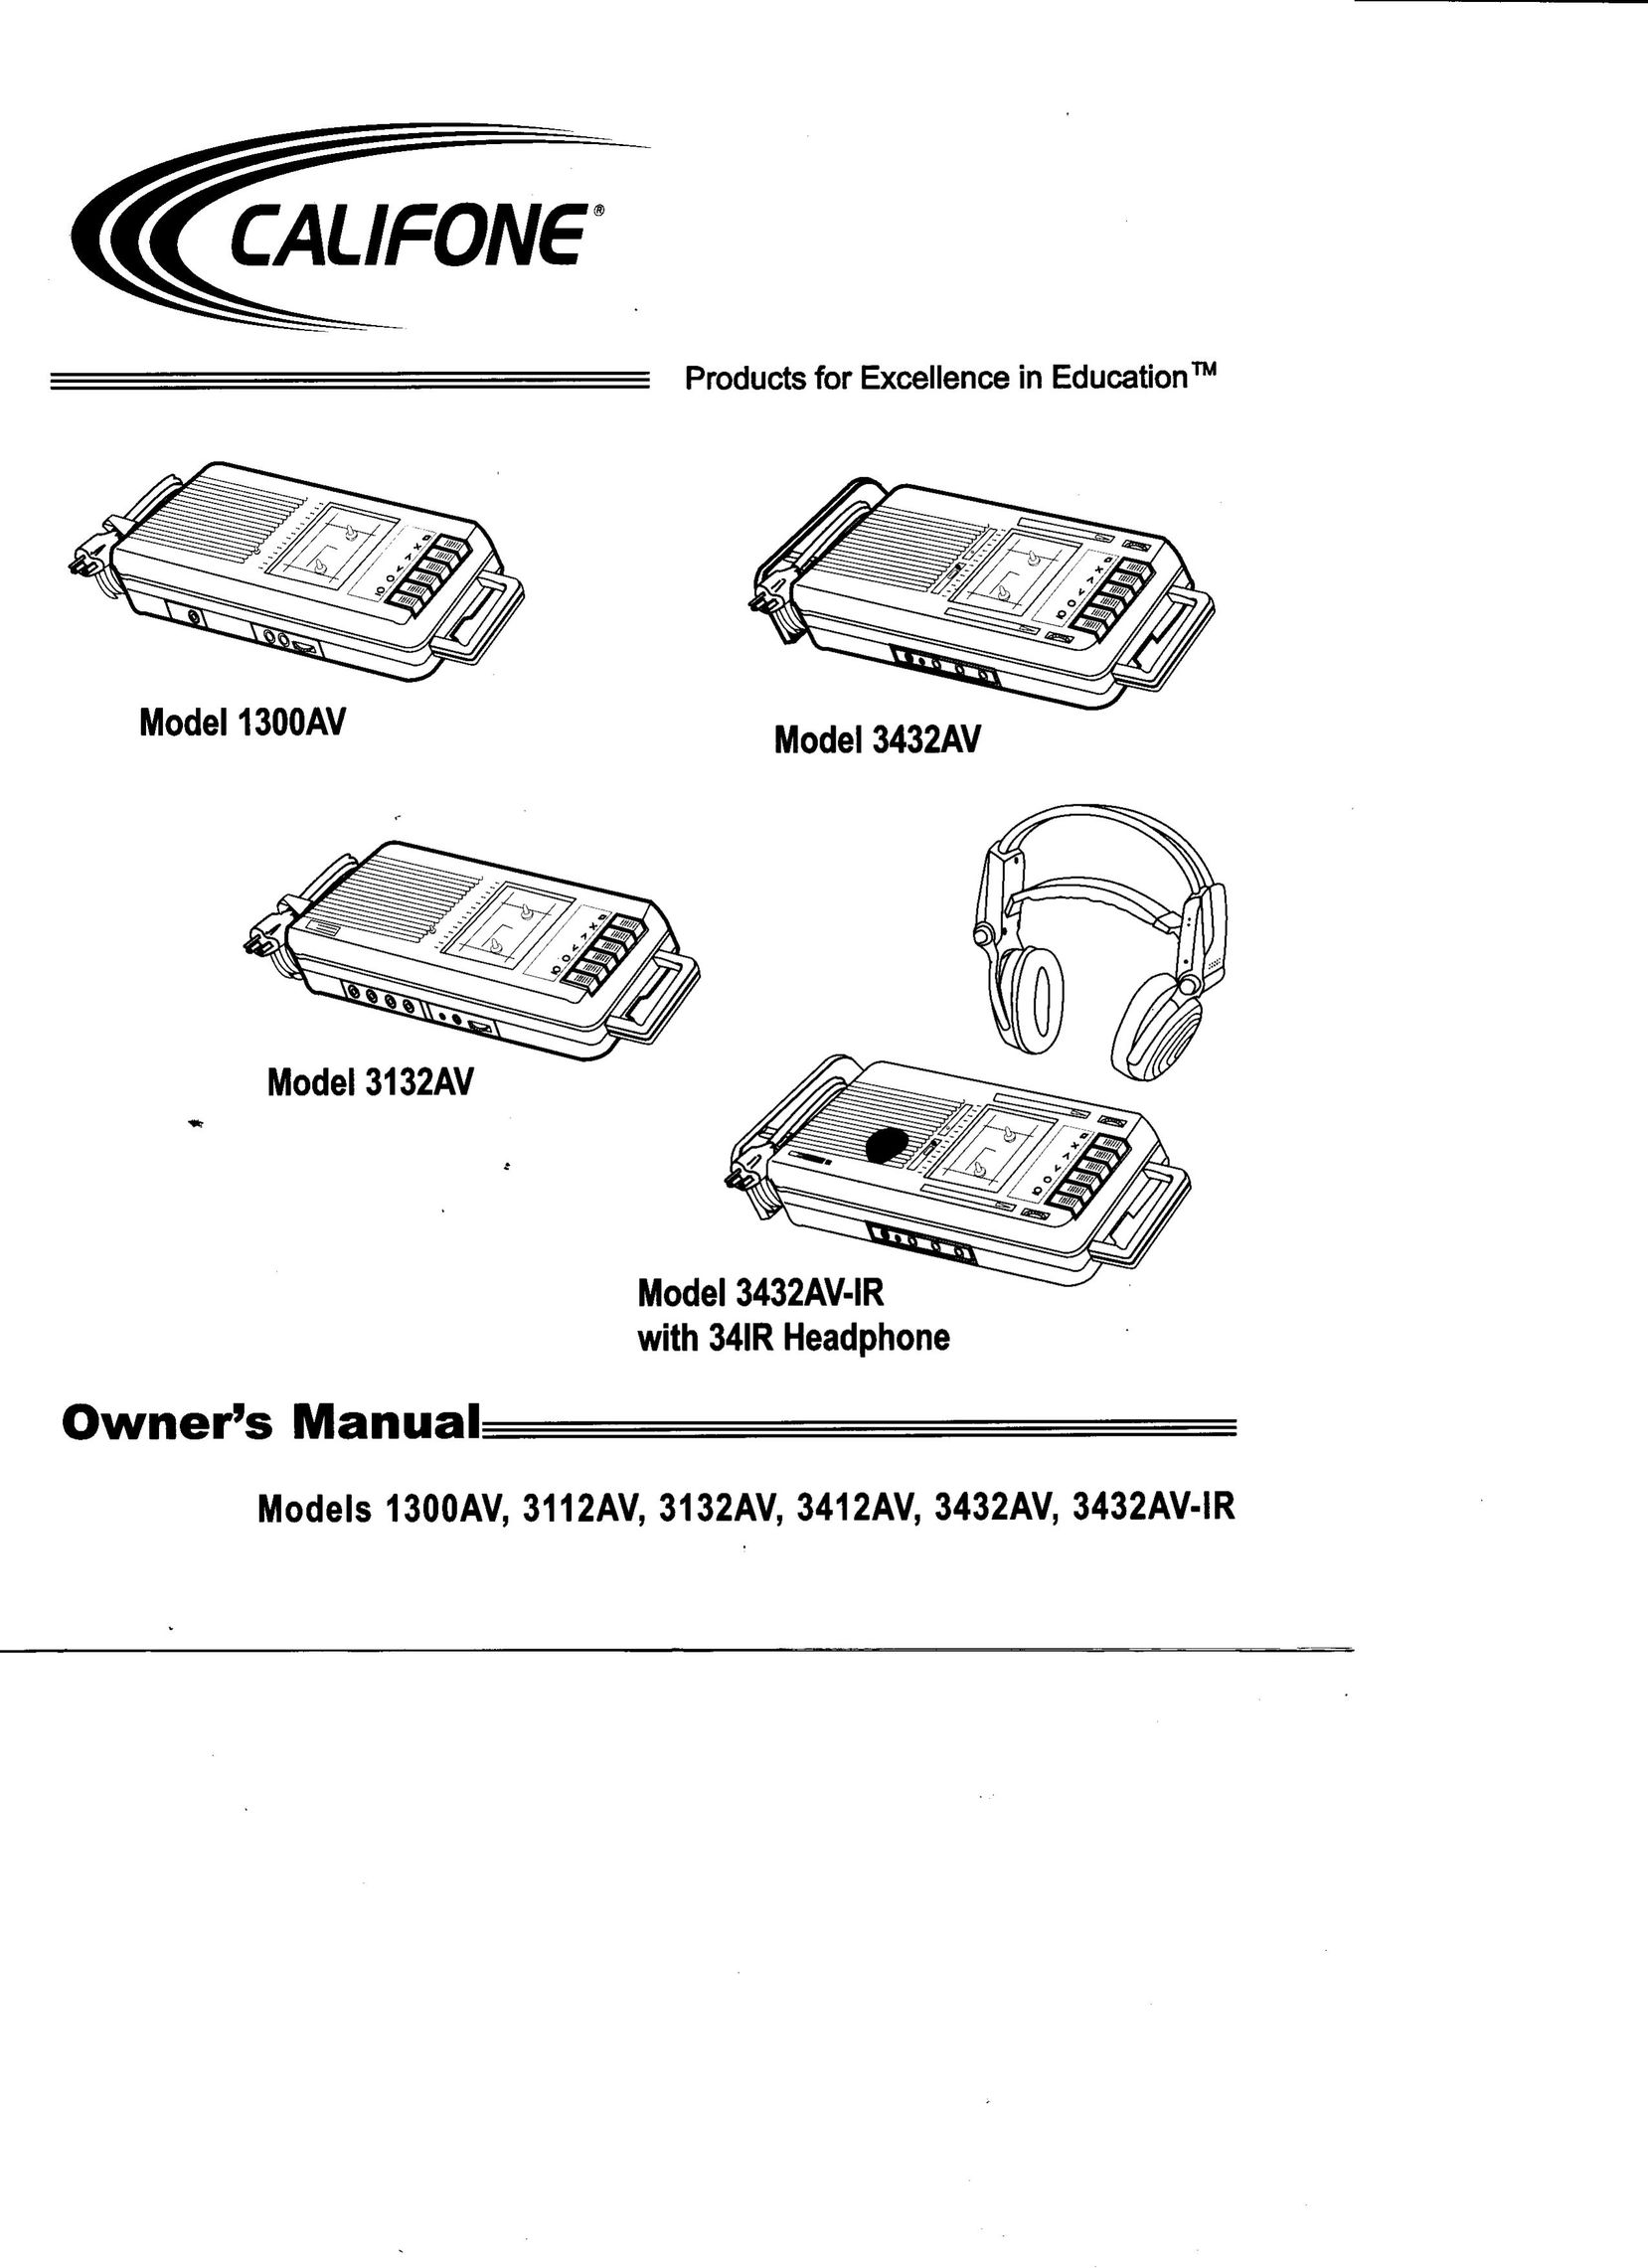 Califone 3432AV Cassette Player User Manual